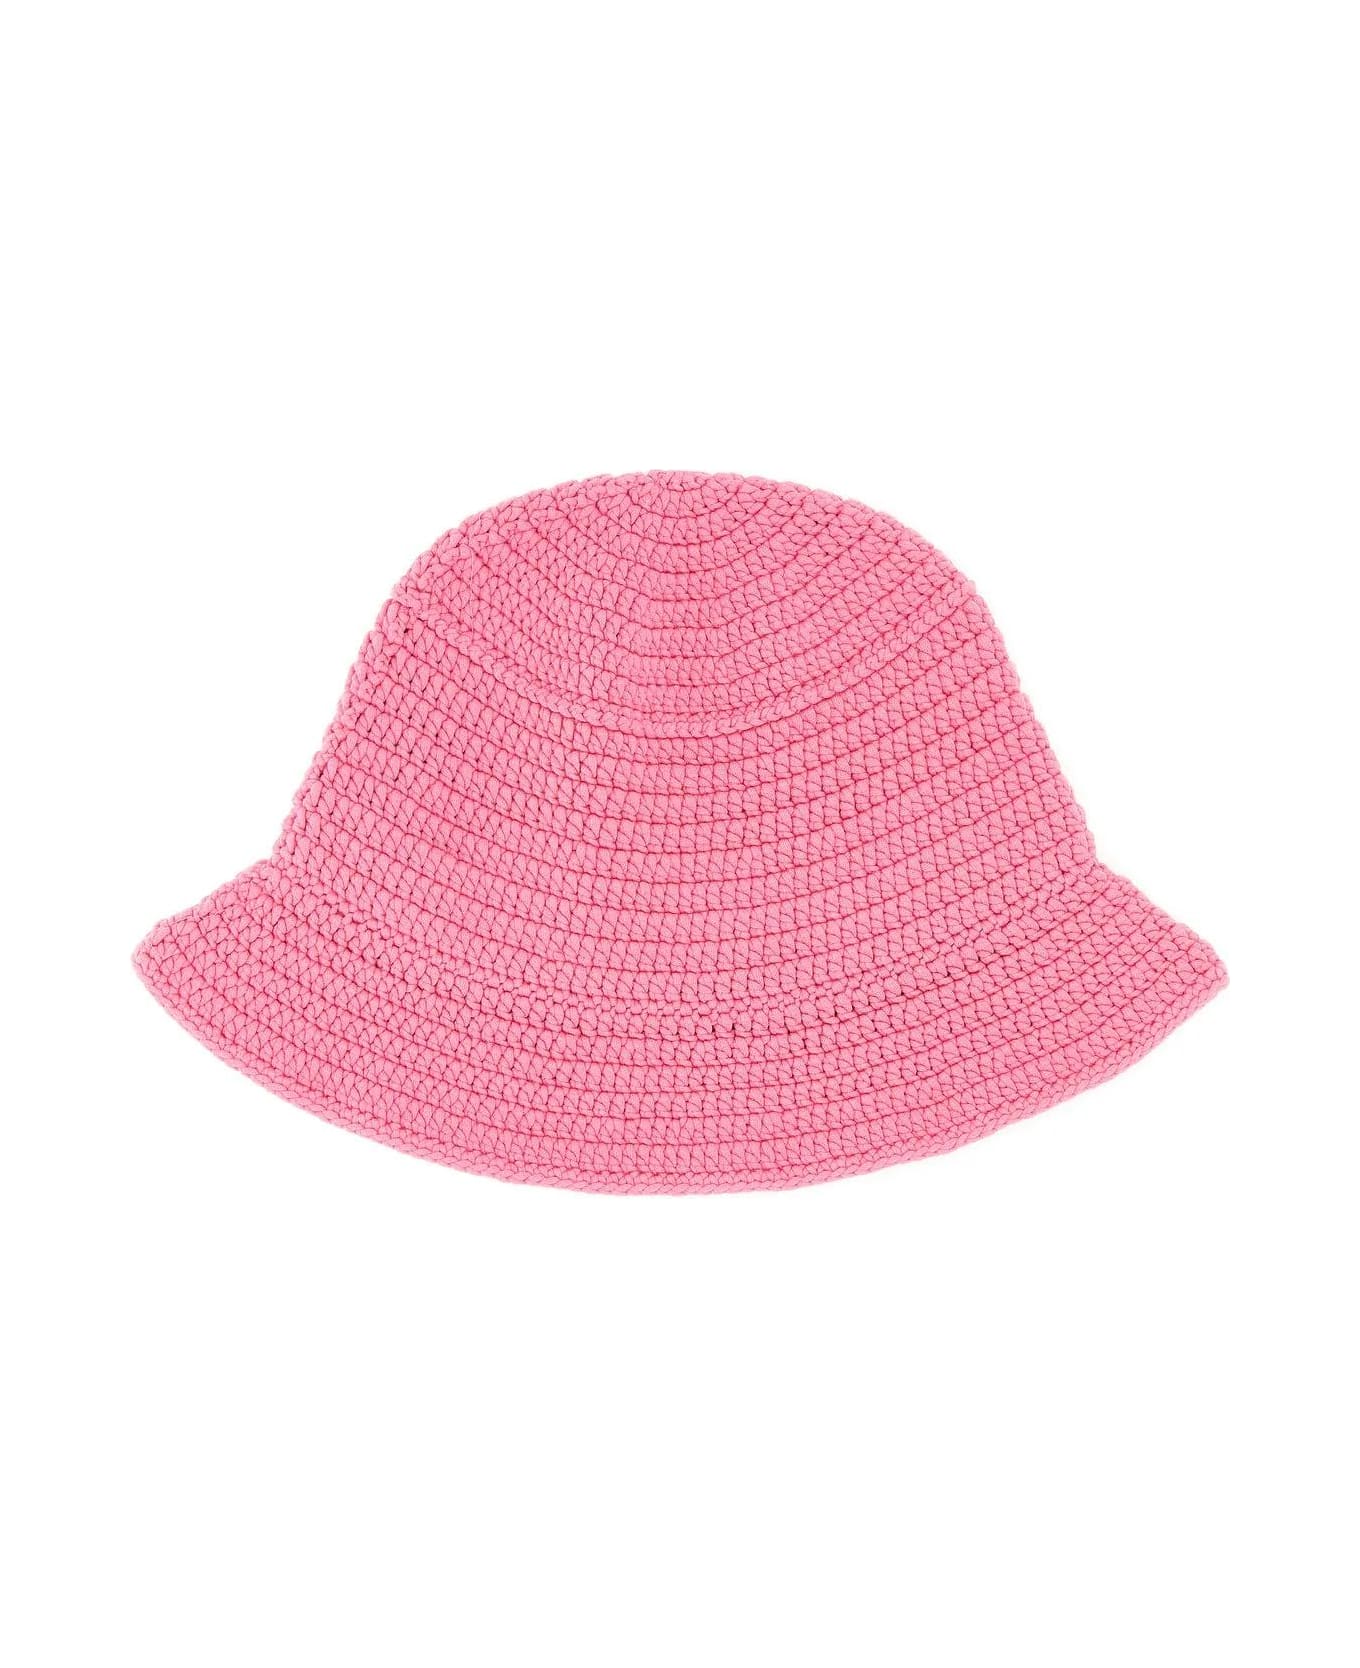 Burberry Pink Crochet Bucket Hat - Pink